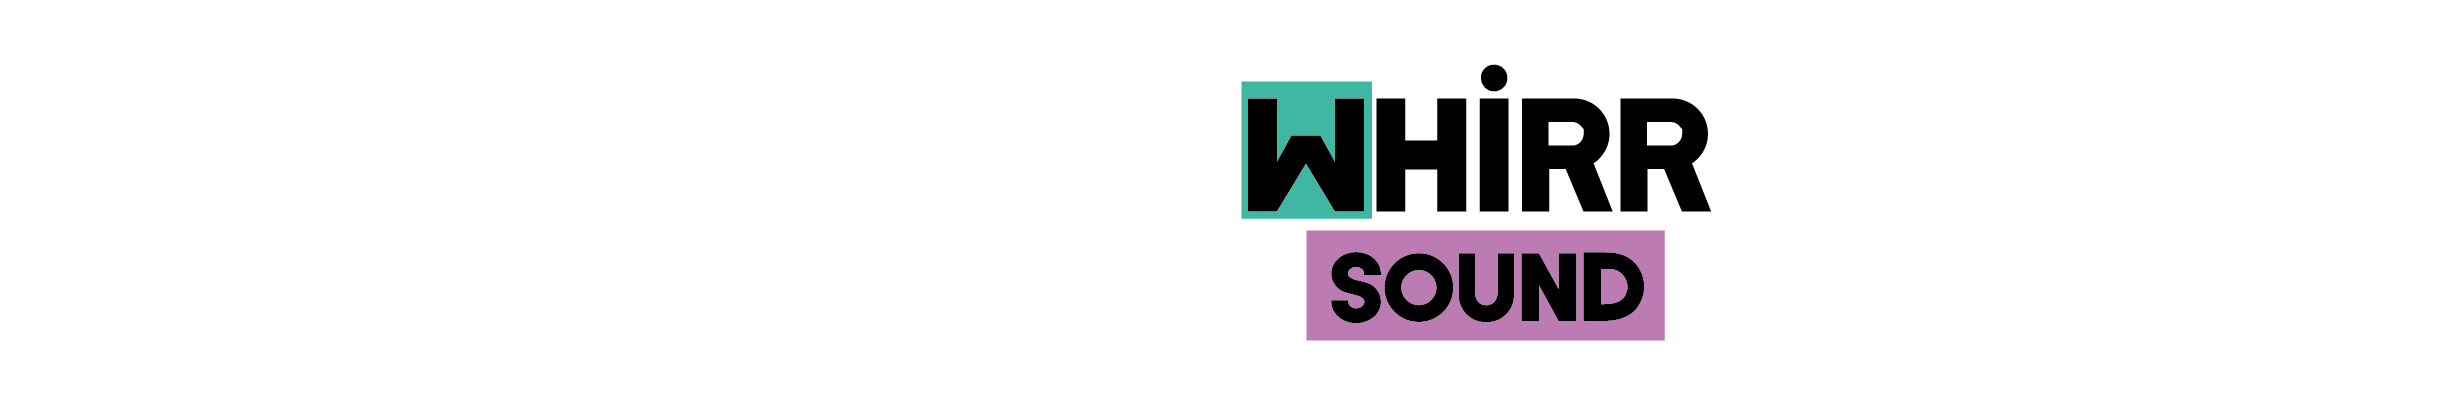 Whirr Sound's profile banner